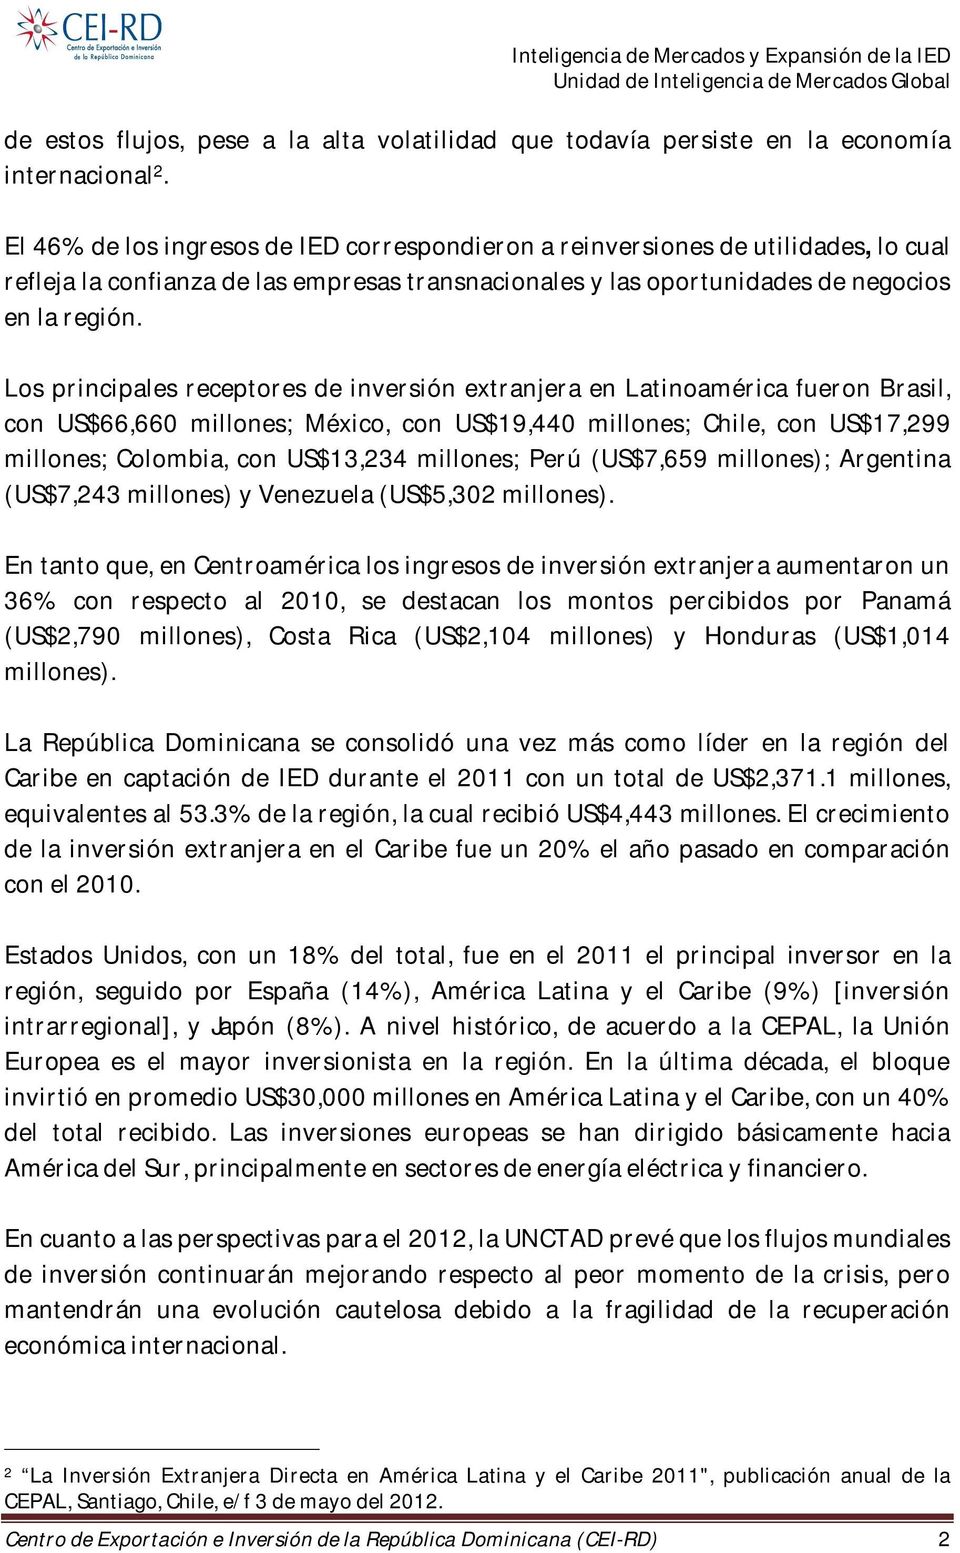 Los principales receptores de inversión extranjera en Latinoamérica fueron Brasil, con US$66,660 millones; México, con US$19,440 millones; Chile, con US$17,299 millones; Colombia, con US$13,234